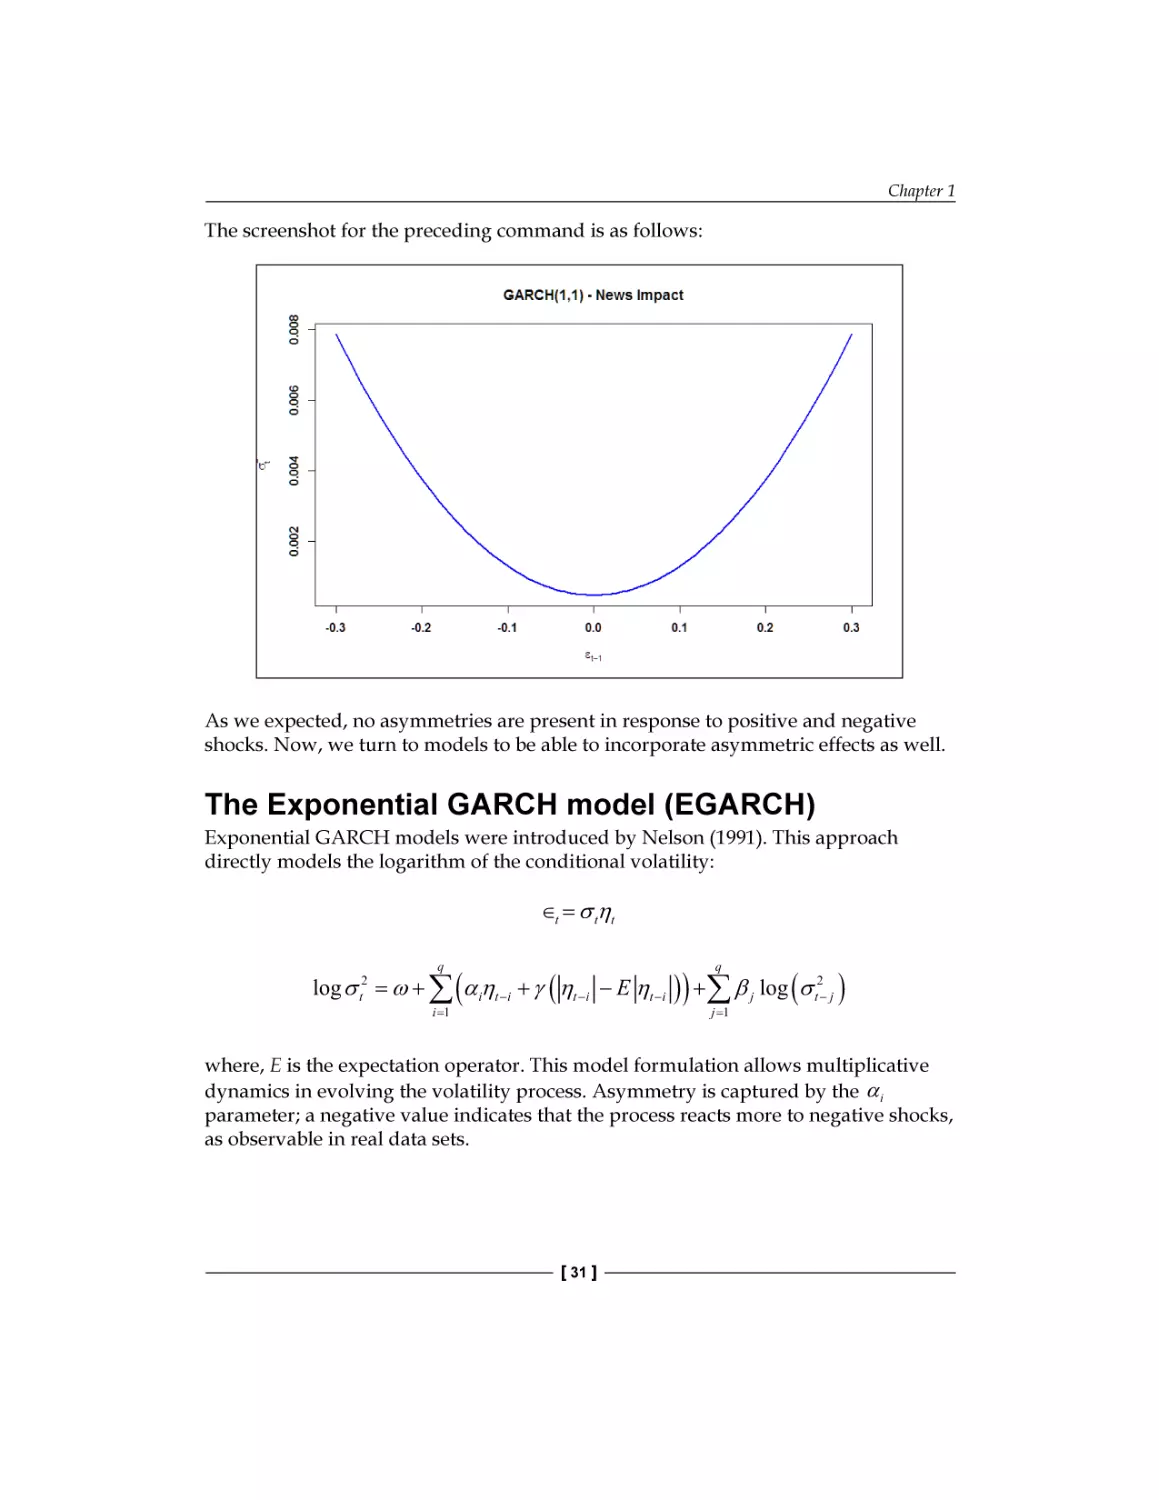 Exponential GARCH model (EGARCH)